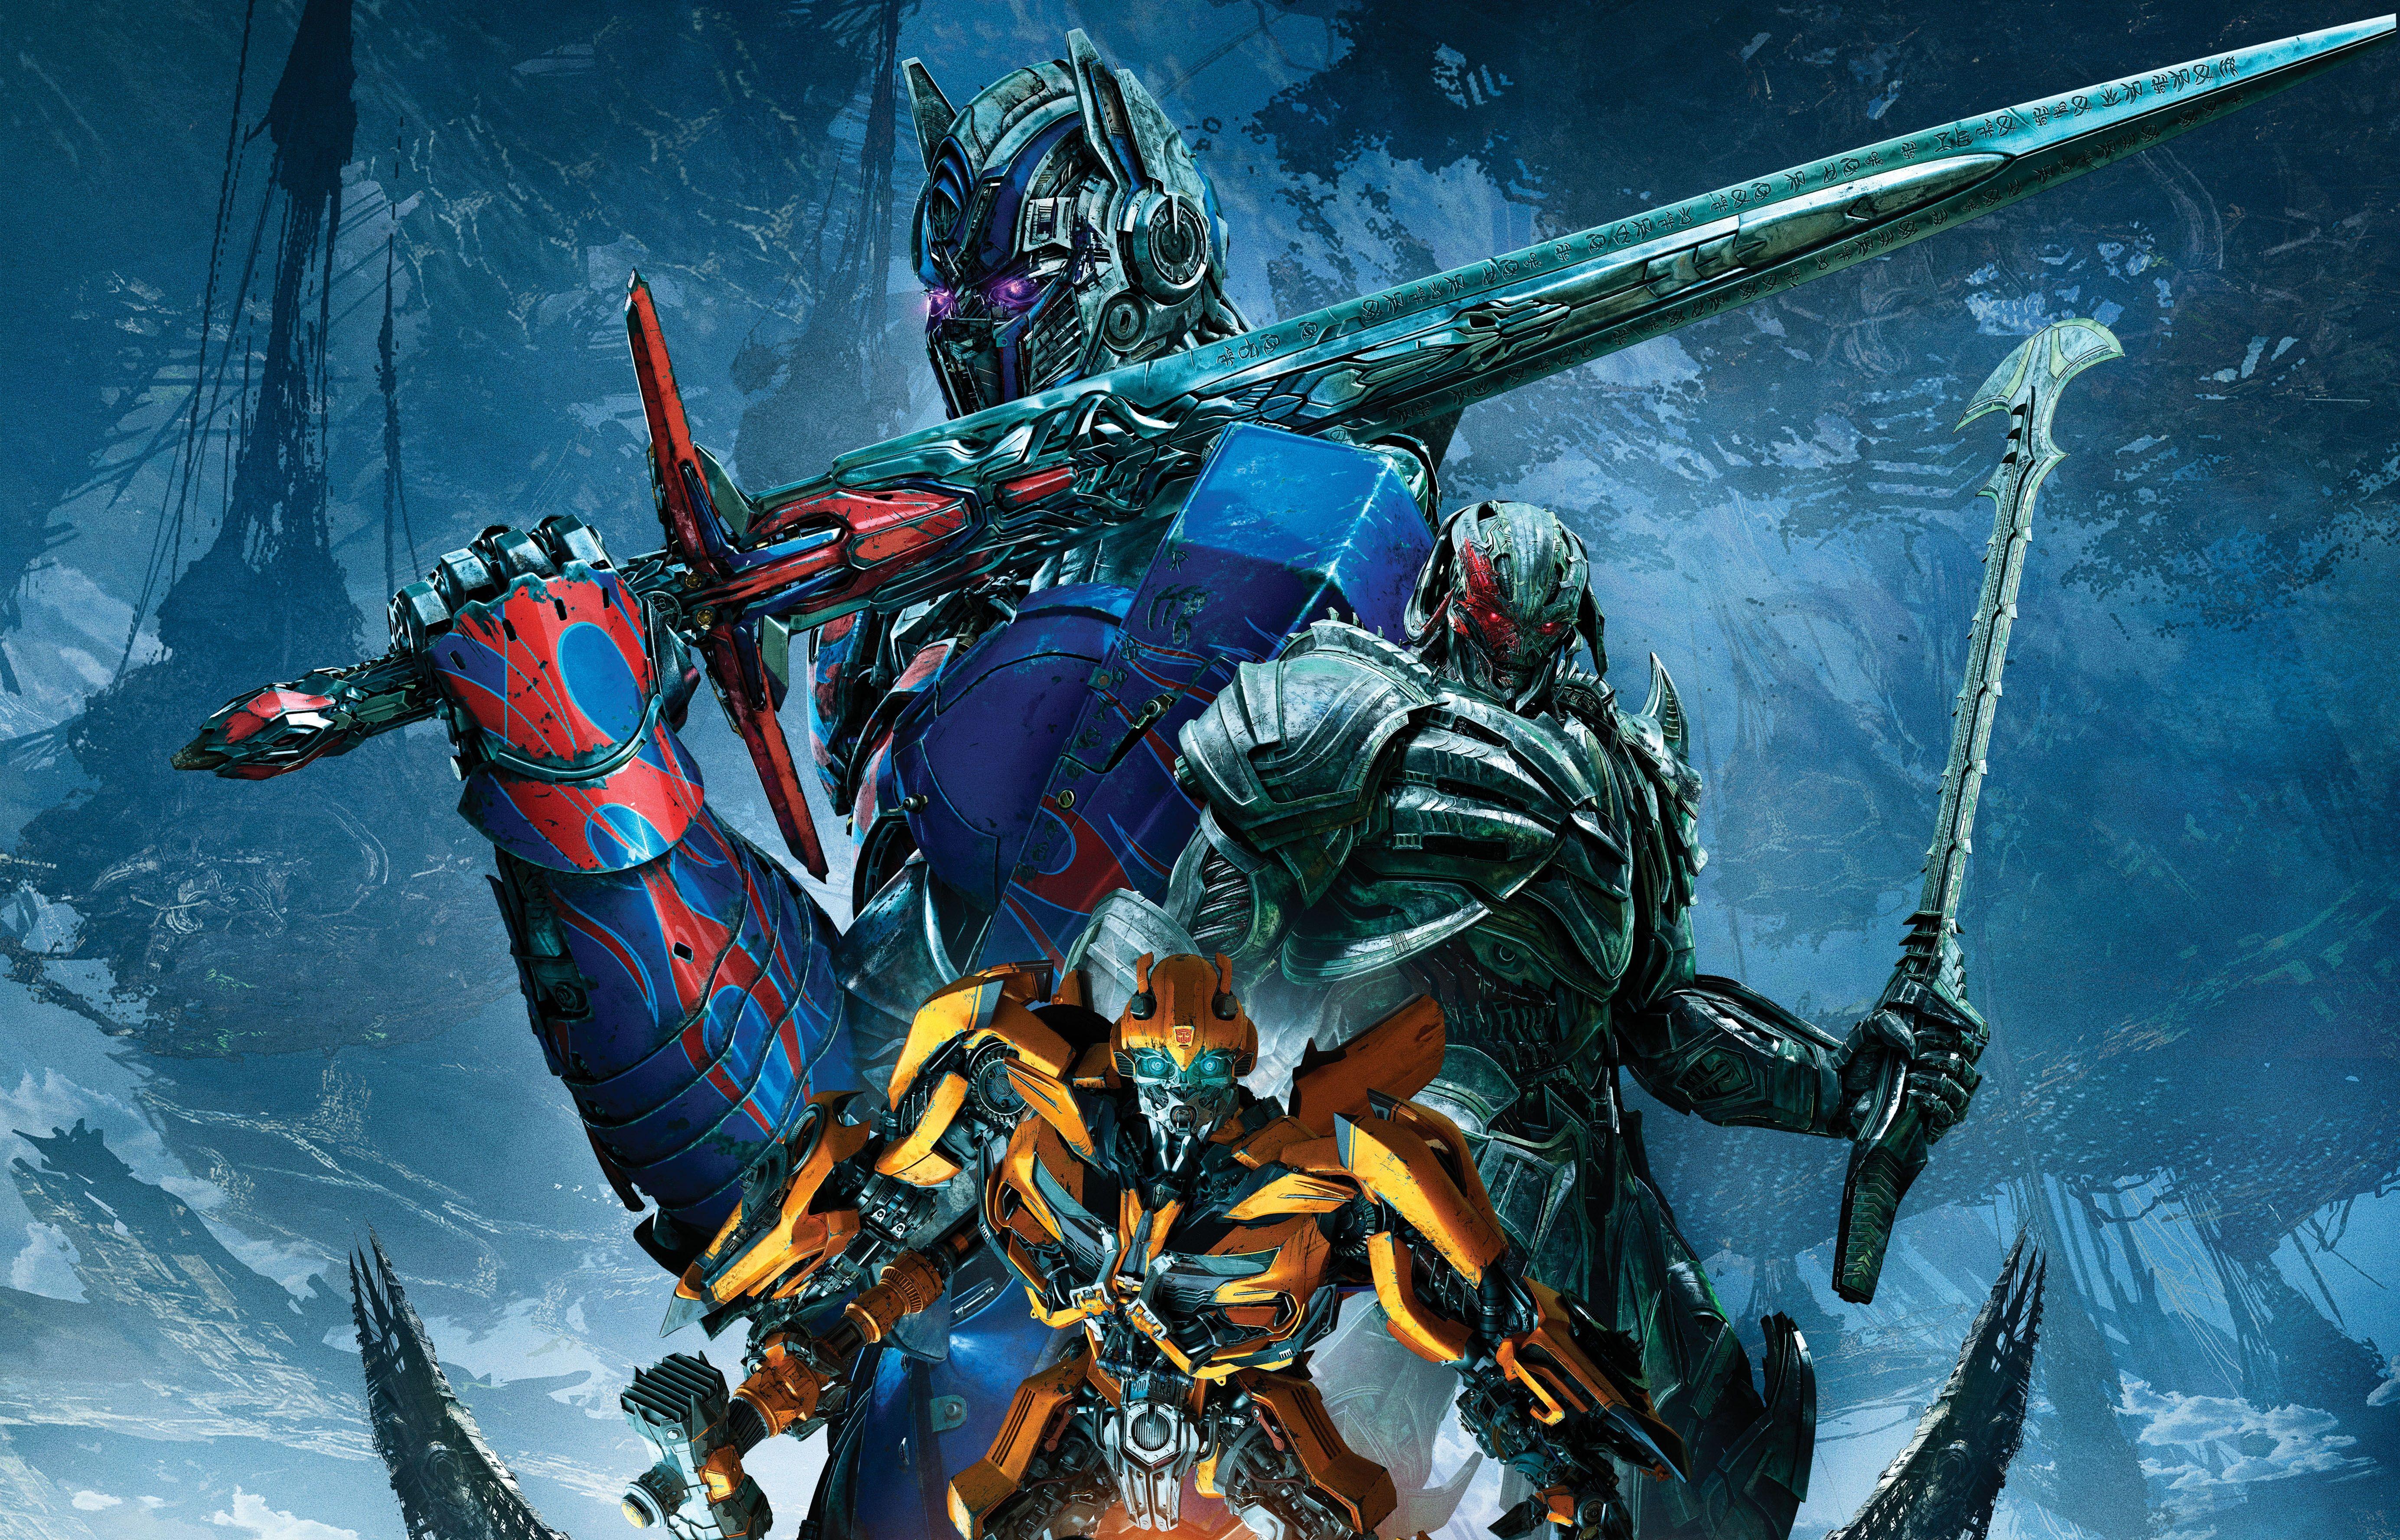 Transformers The Last Knight 4k Ultra HD Wallpaper